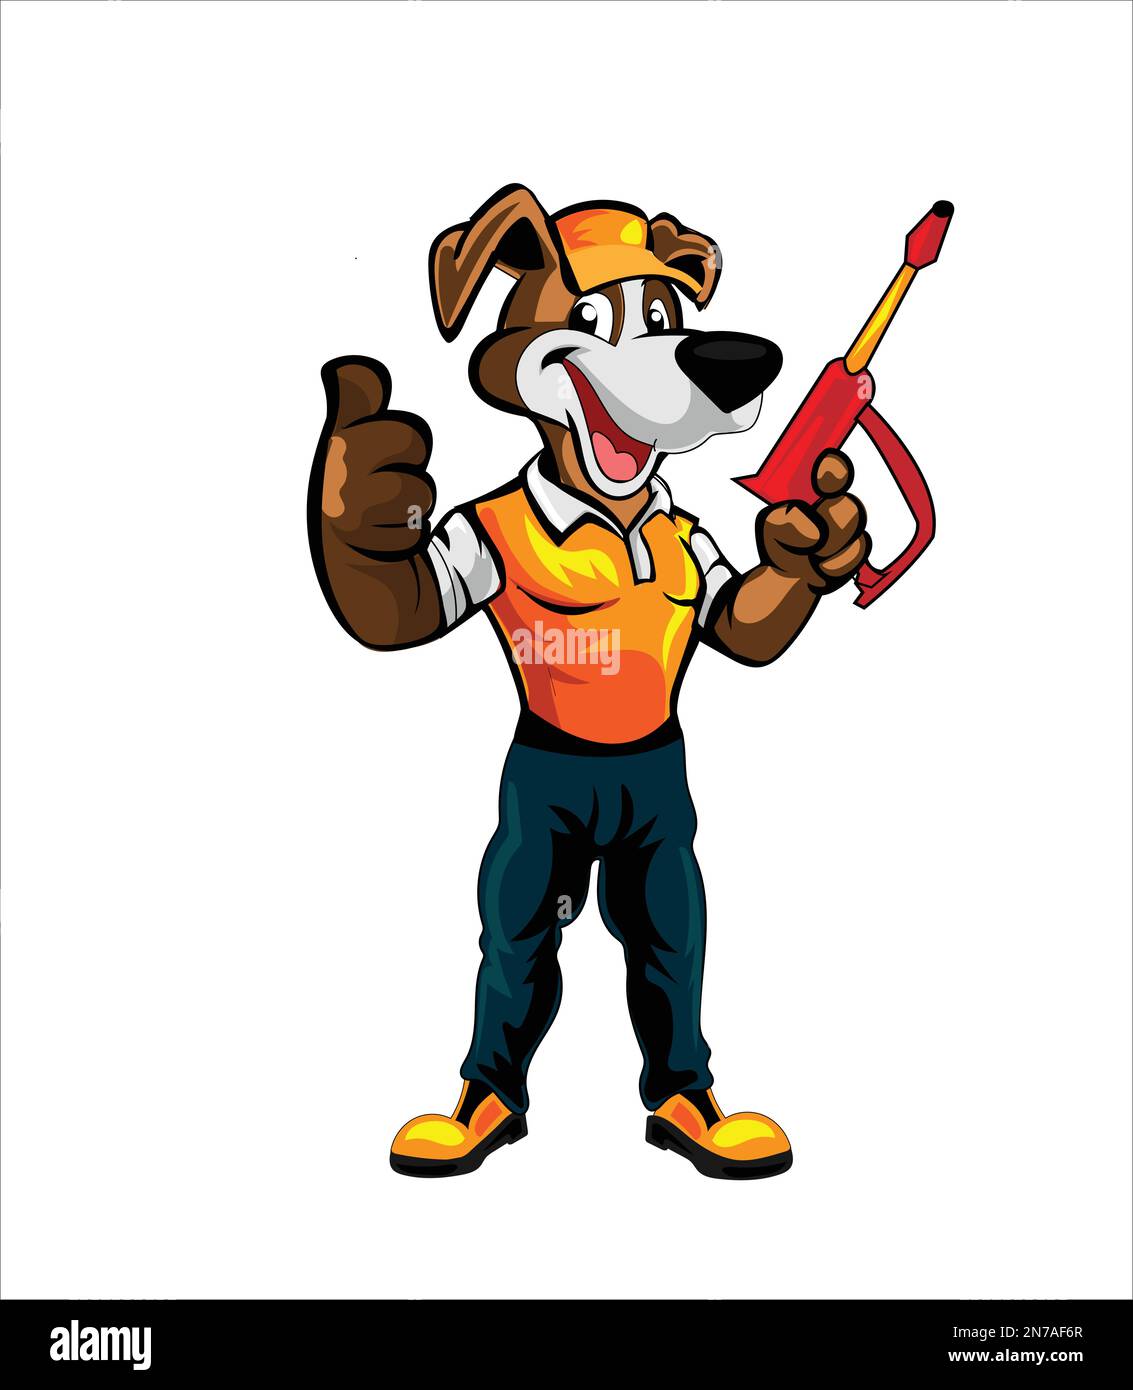 Plumber dog mascot vector illustration on white background Pro Vector Stock Vector